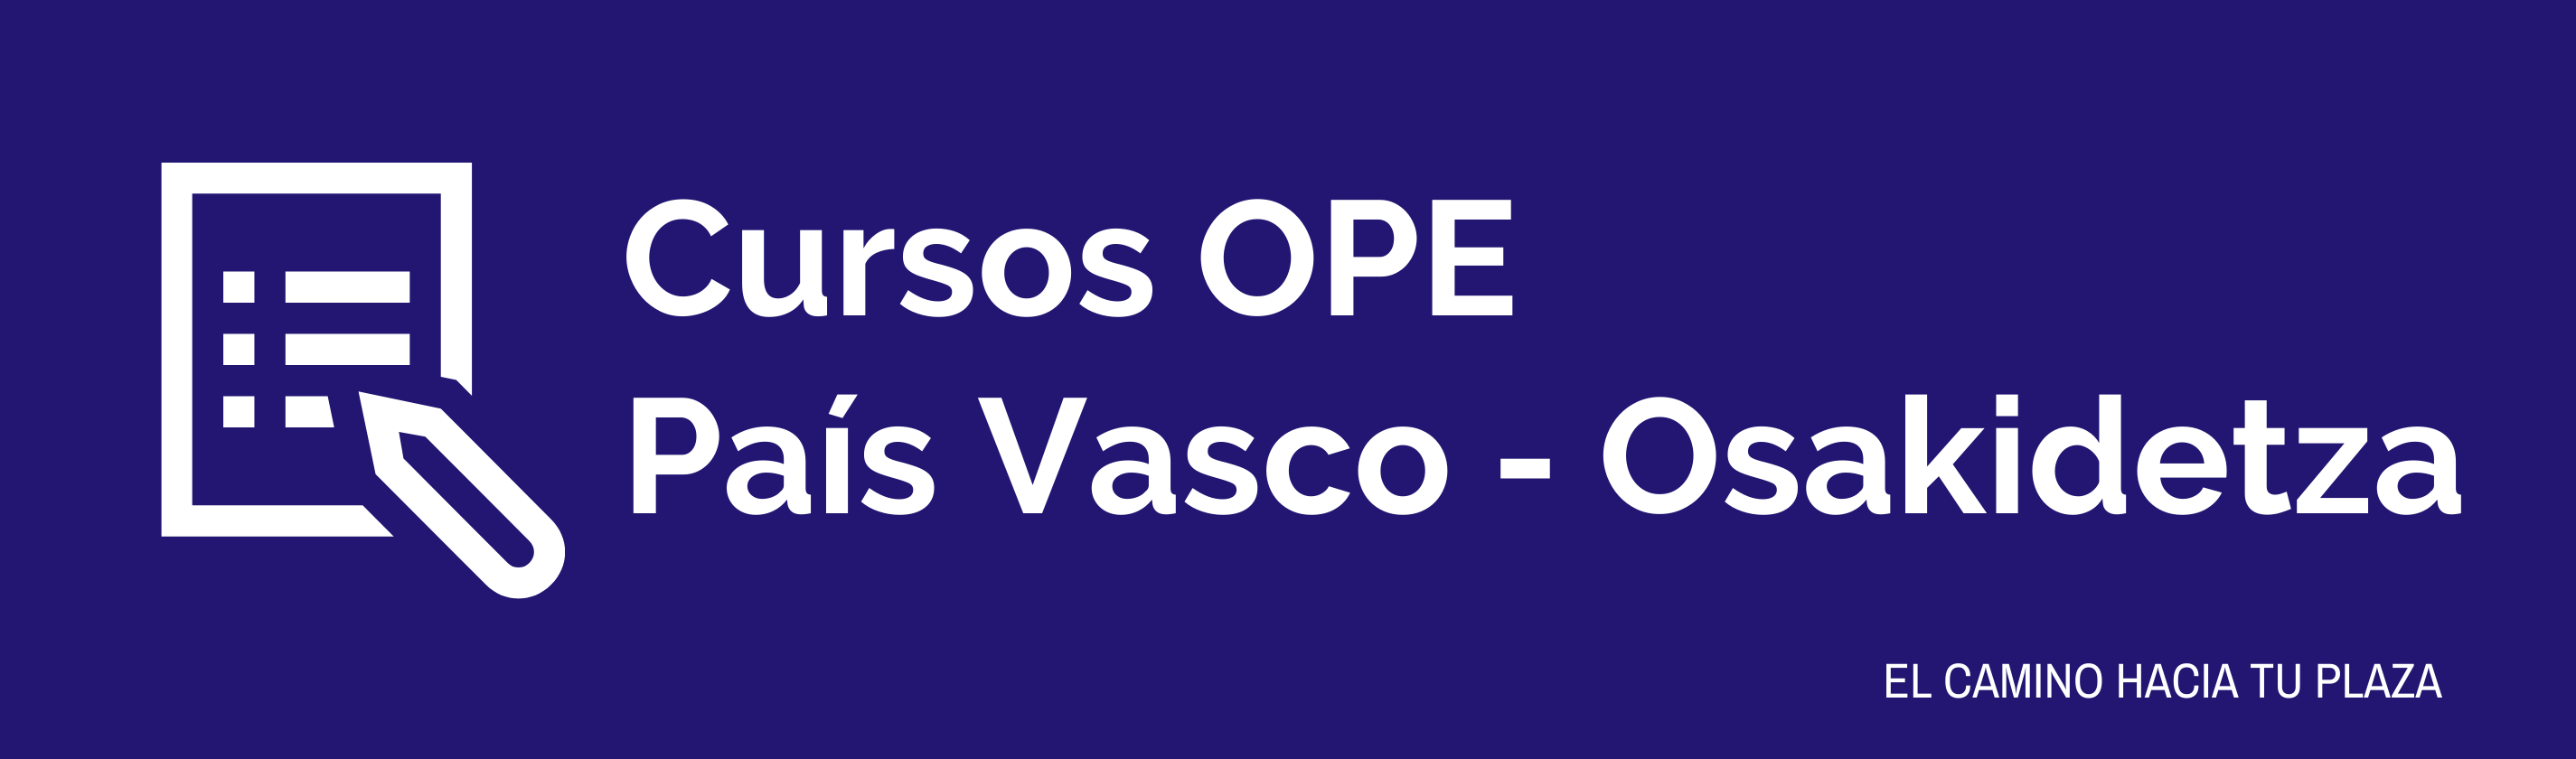 Curso OPE País Vasco - Osakidetza